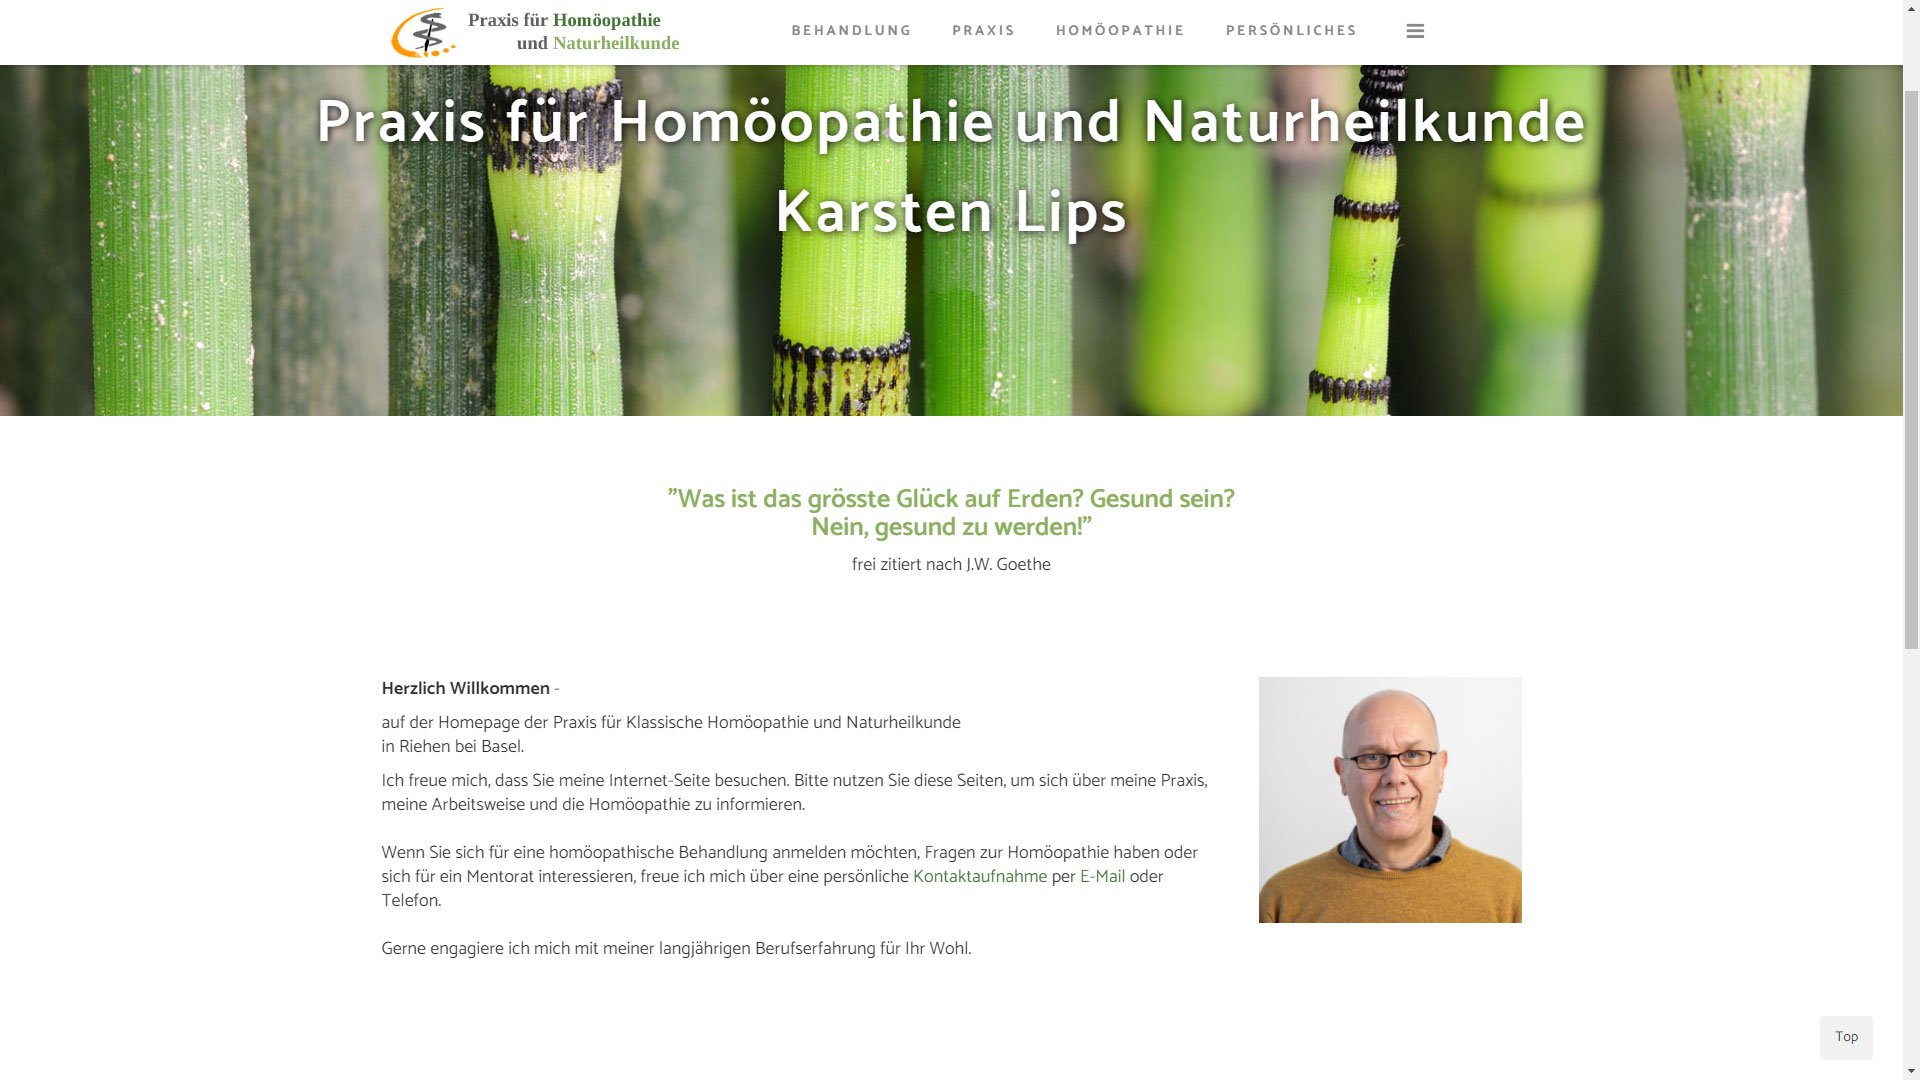 Praxis für Naturheilkunden und Homöopathie Karsten Lips